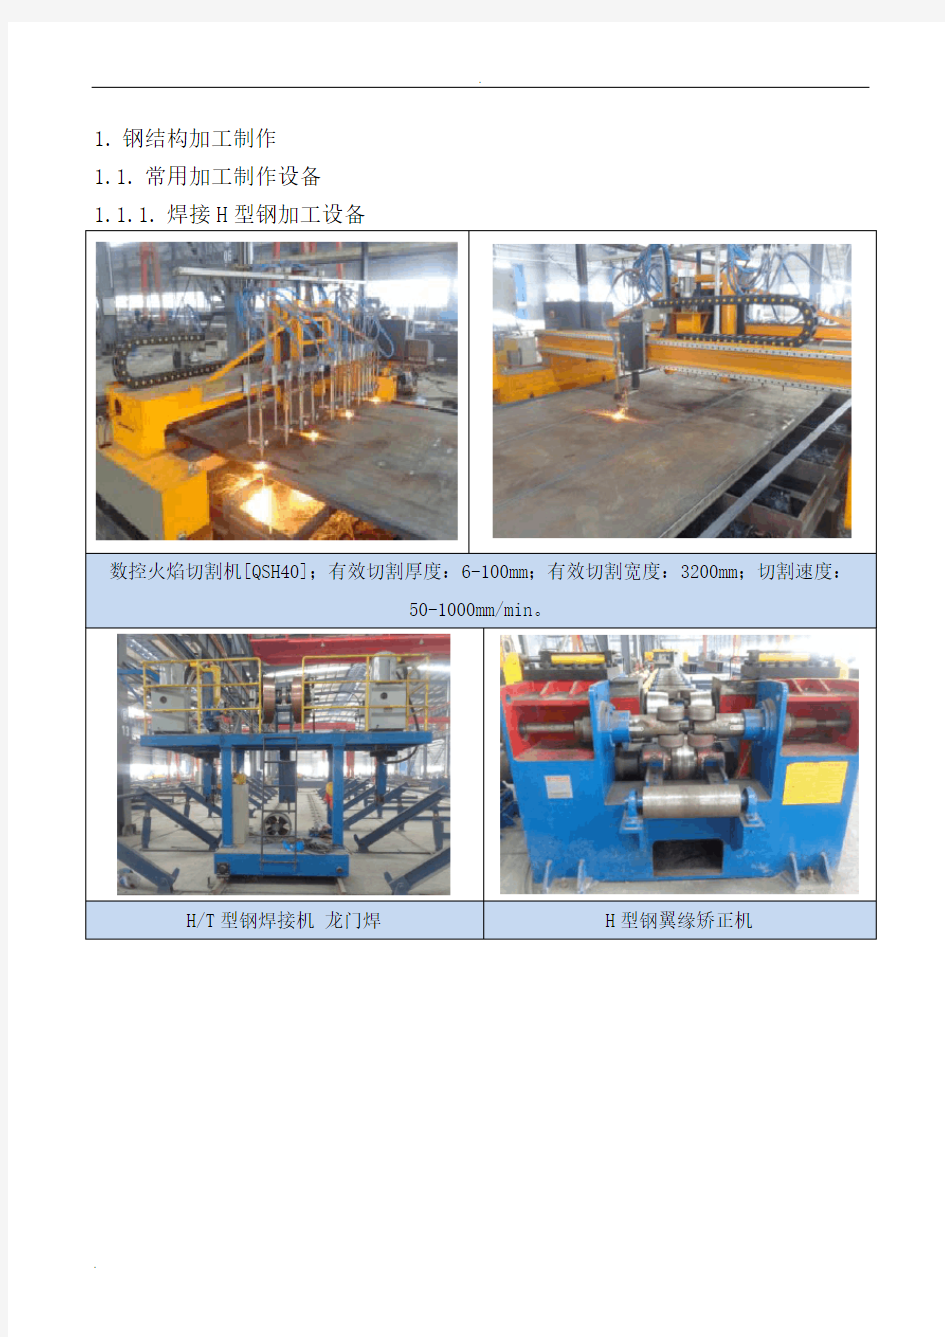 钢结构加工制作流程及设备汇总